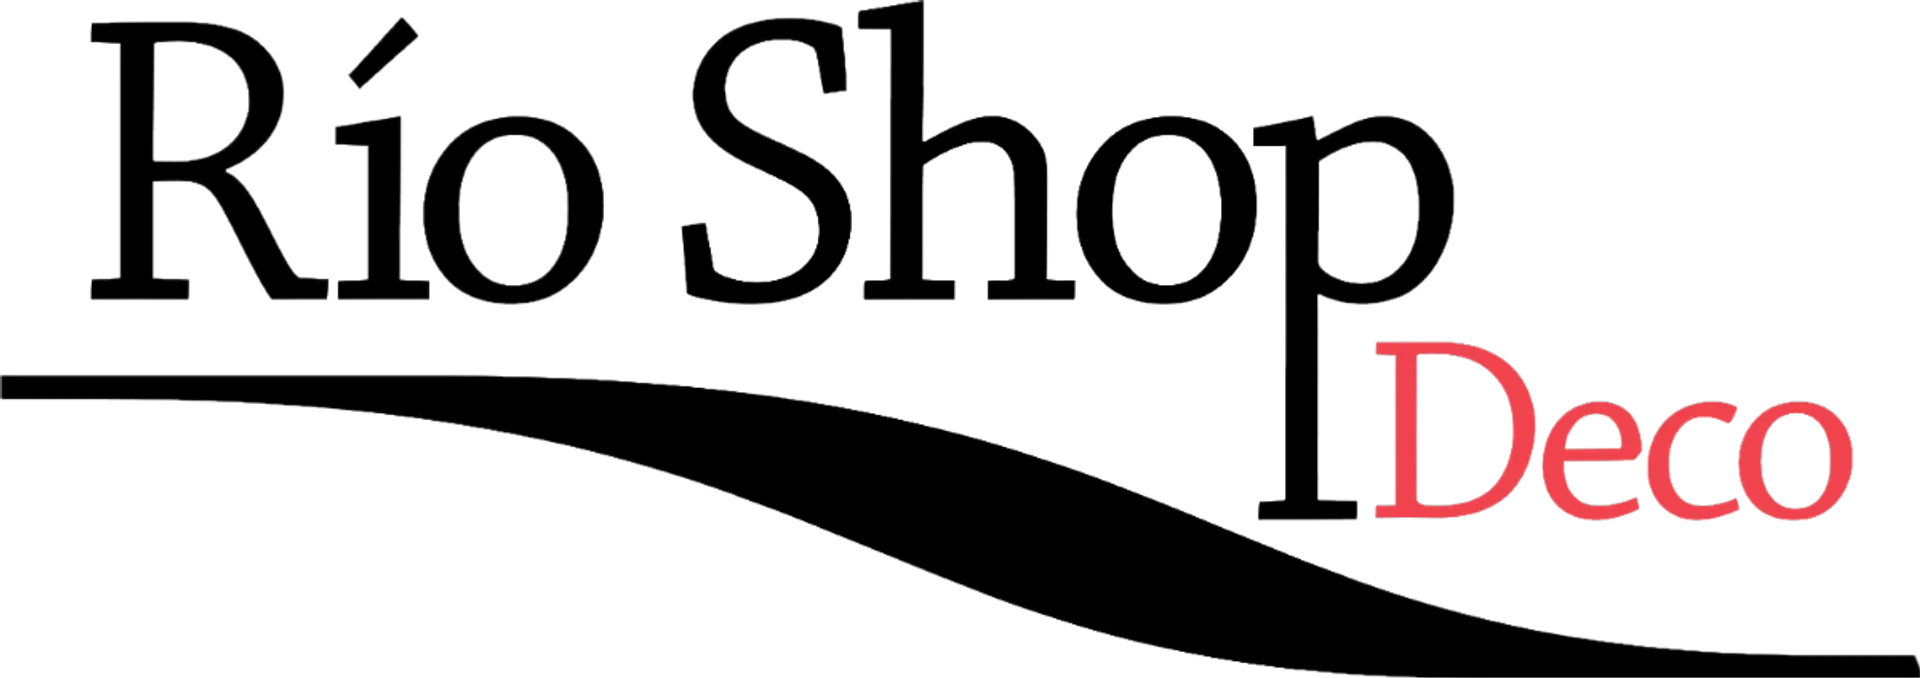 RÍO SHOP DECO logo